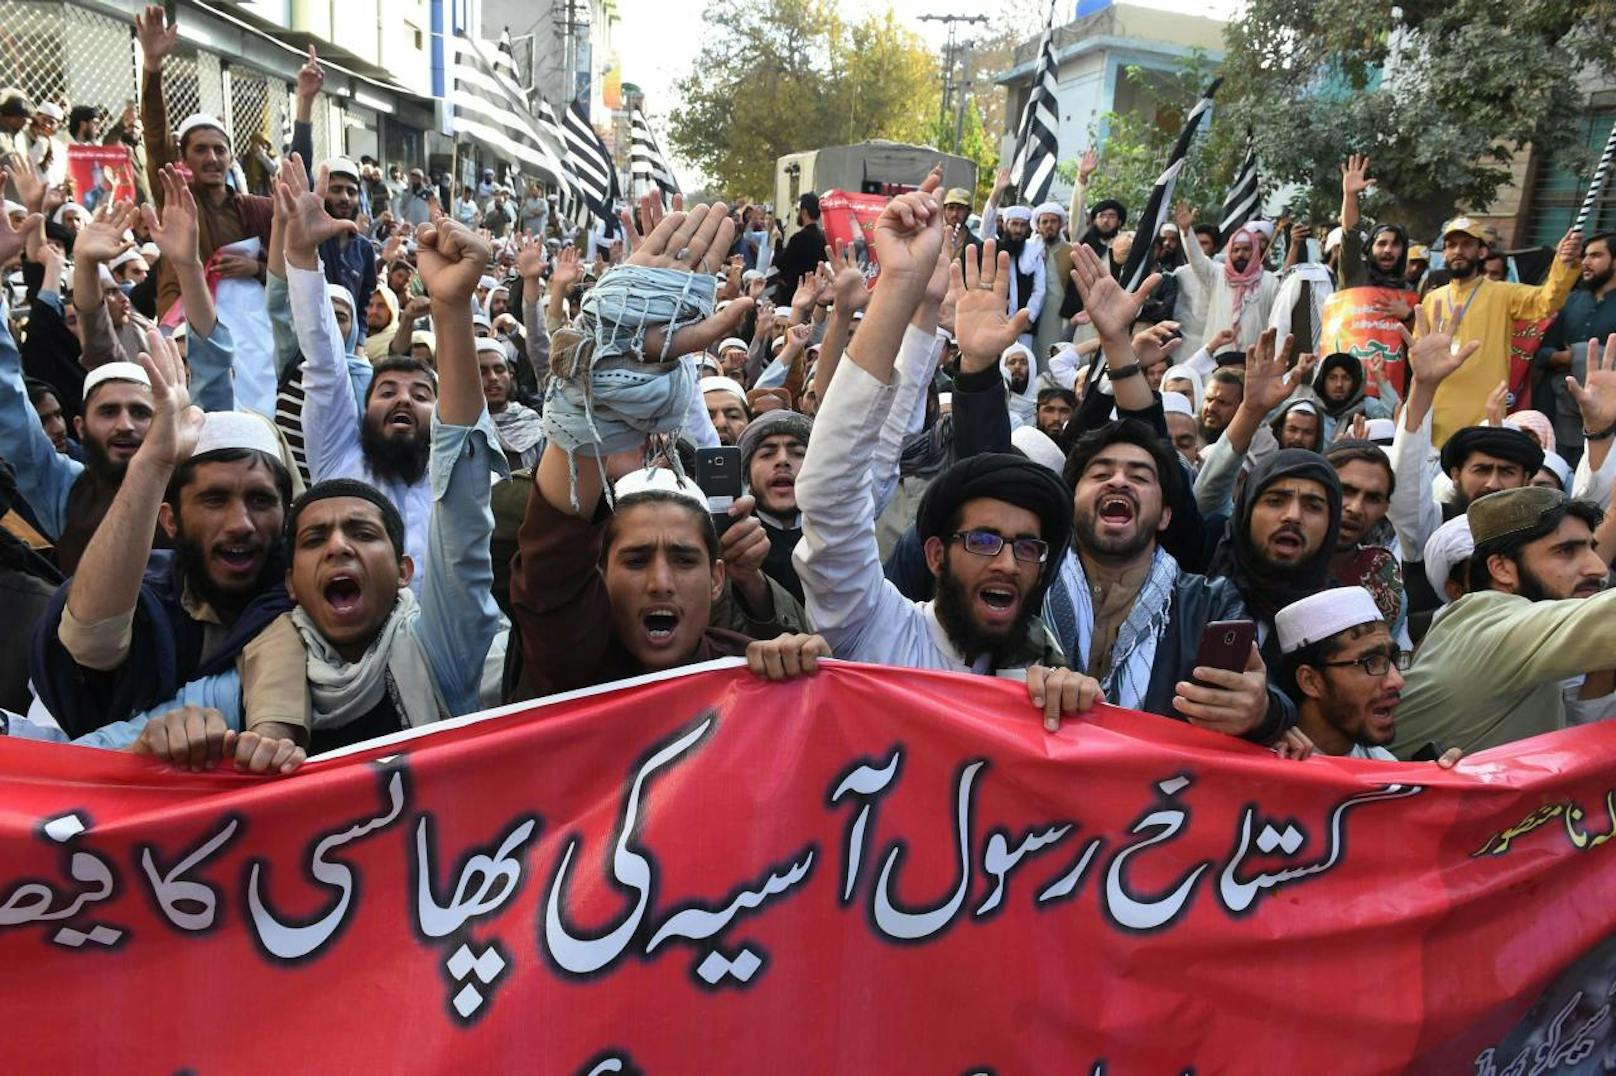 Anhänger der radikalen islamistischen Partei Tehreek-e-Labaik Pakistan (TLP) demonstrieren gegen den Freispruch einer Christin, die wegen Gotteslästerung in der Todeszelle saß.